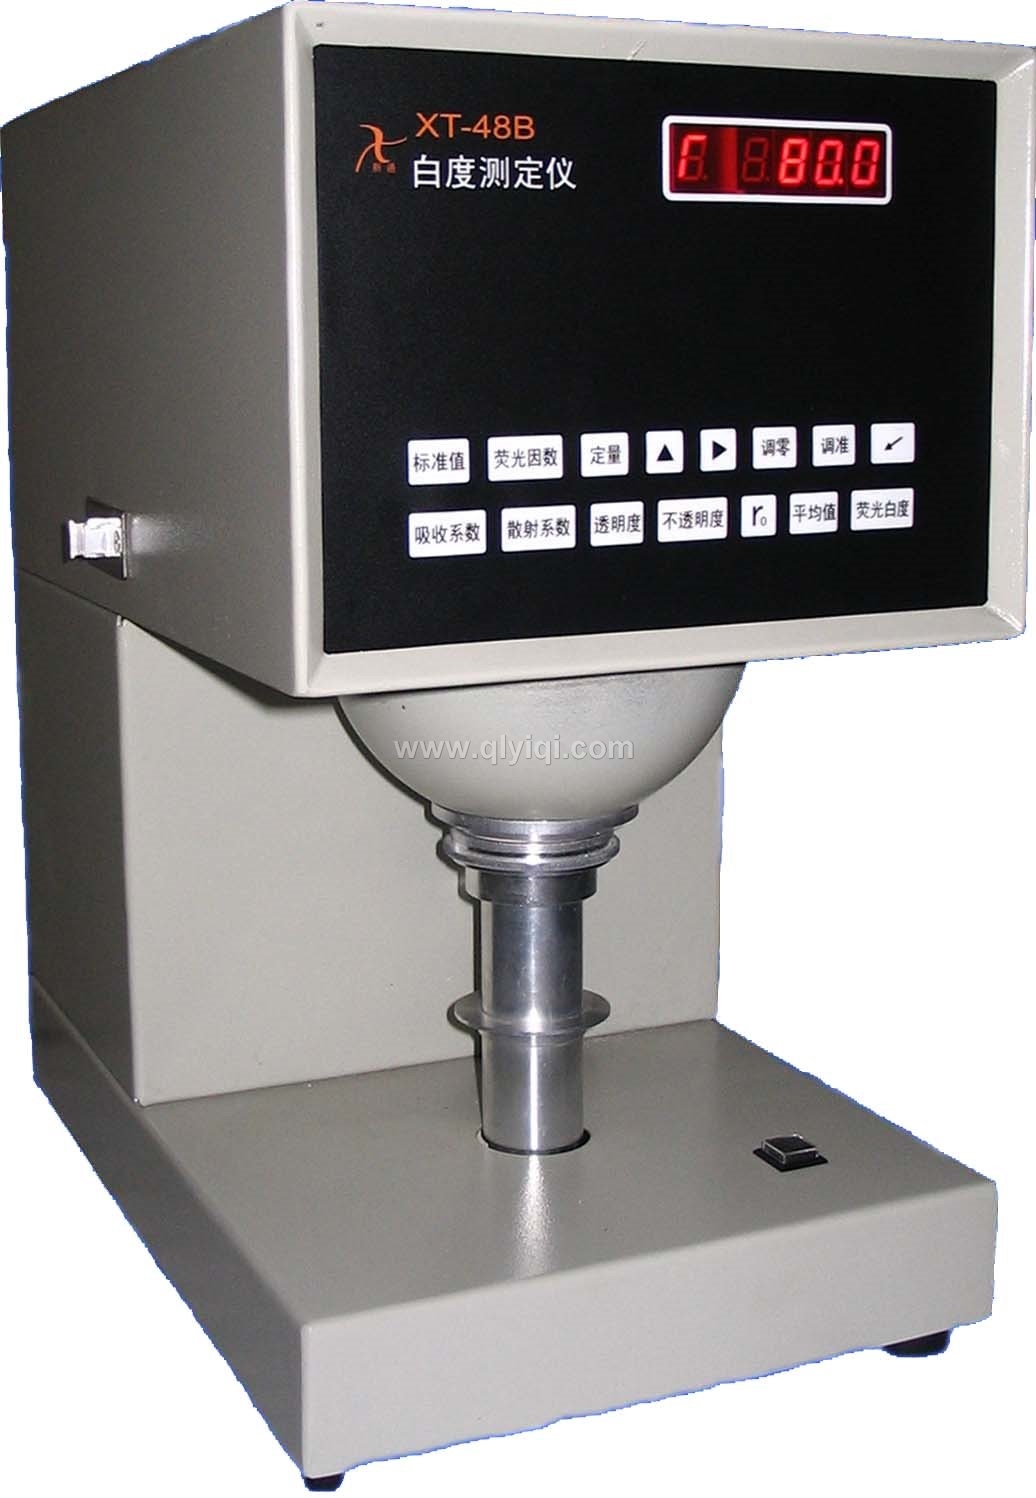 QL-48B 白度测定仪 纸板、纸浆、化纤用浆 白度检测仪器,QL-48B 白度测定仪 纸板、纸浆、化纤用浆 白度检测仪器